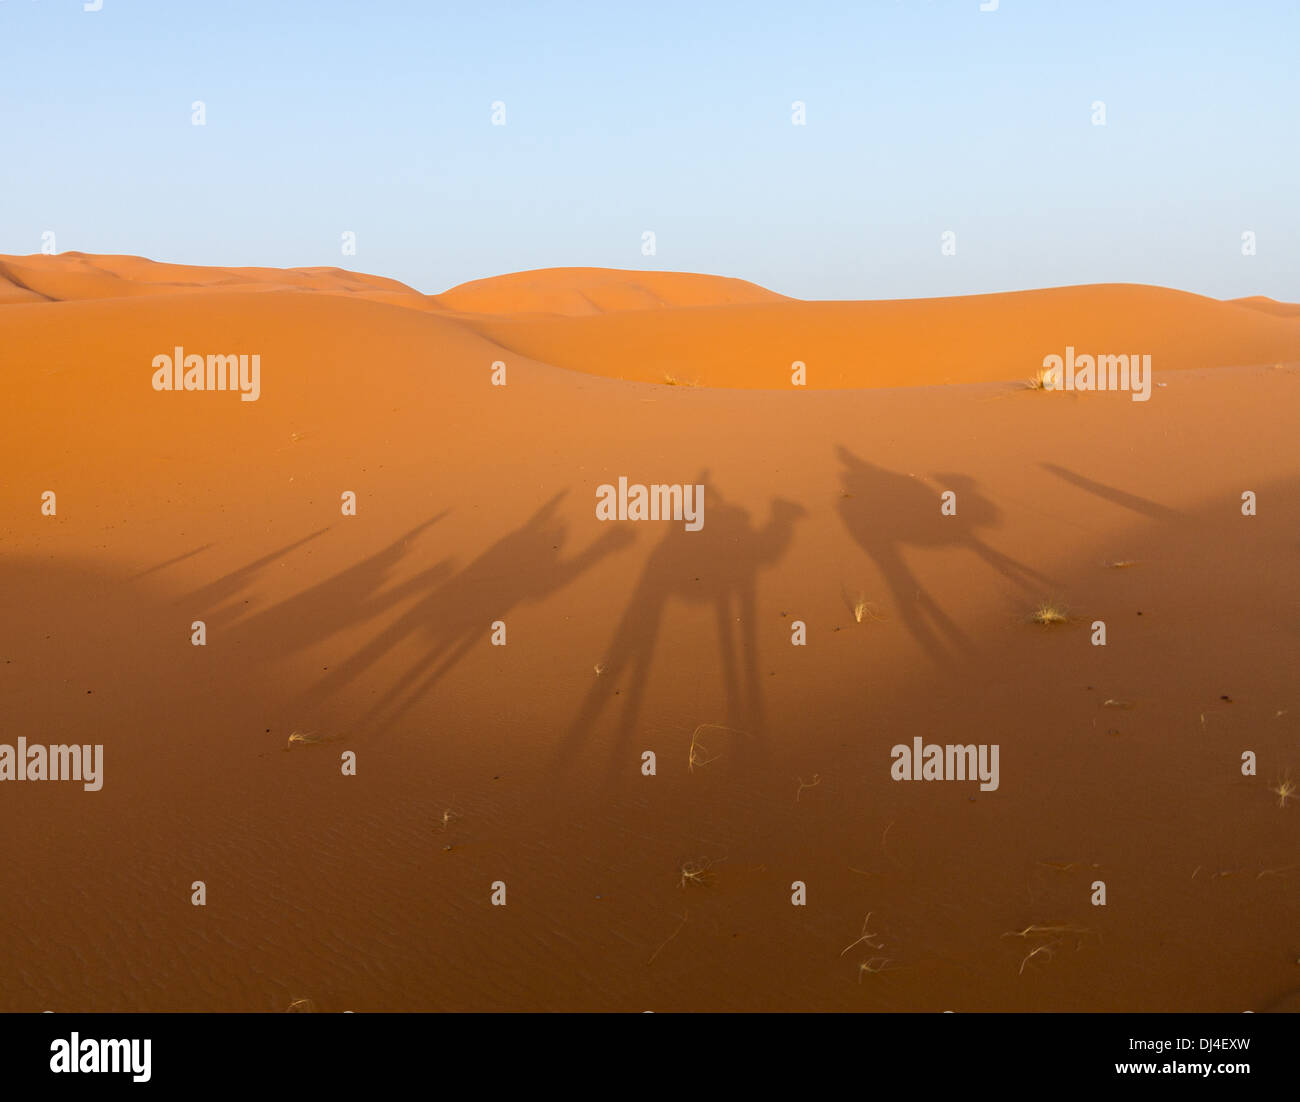 Desierto del Sahara - sombras de un tren camello en las dunas de arena. Foto de stock